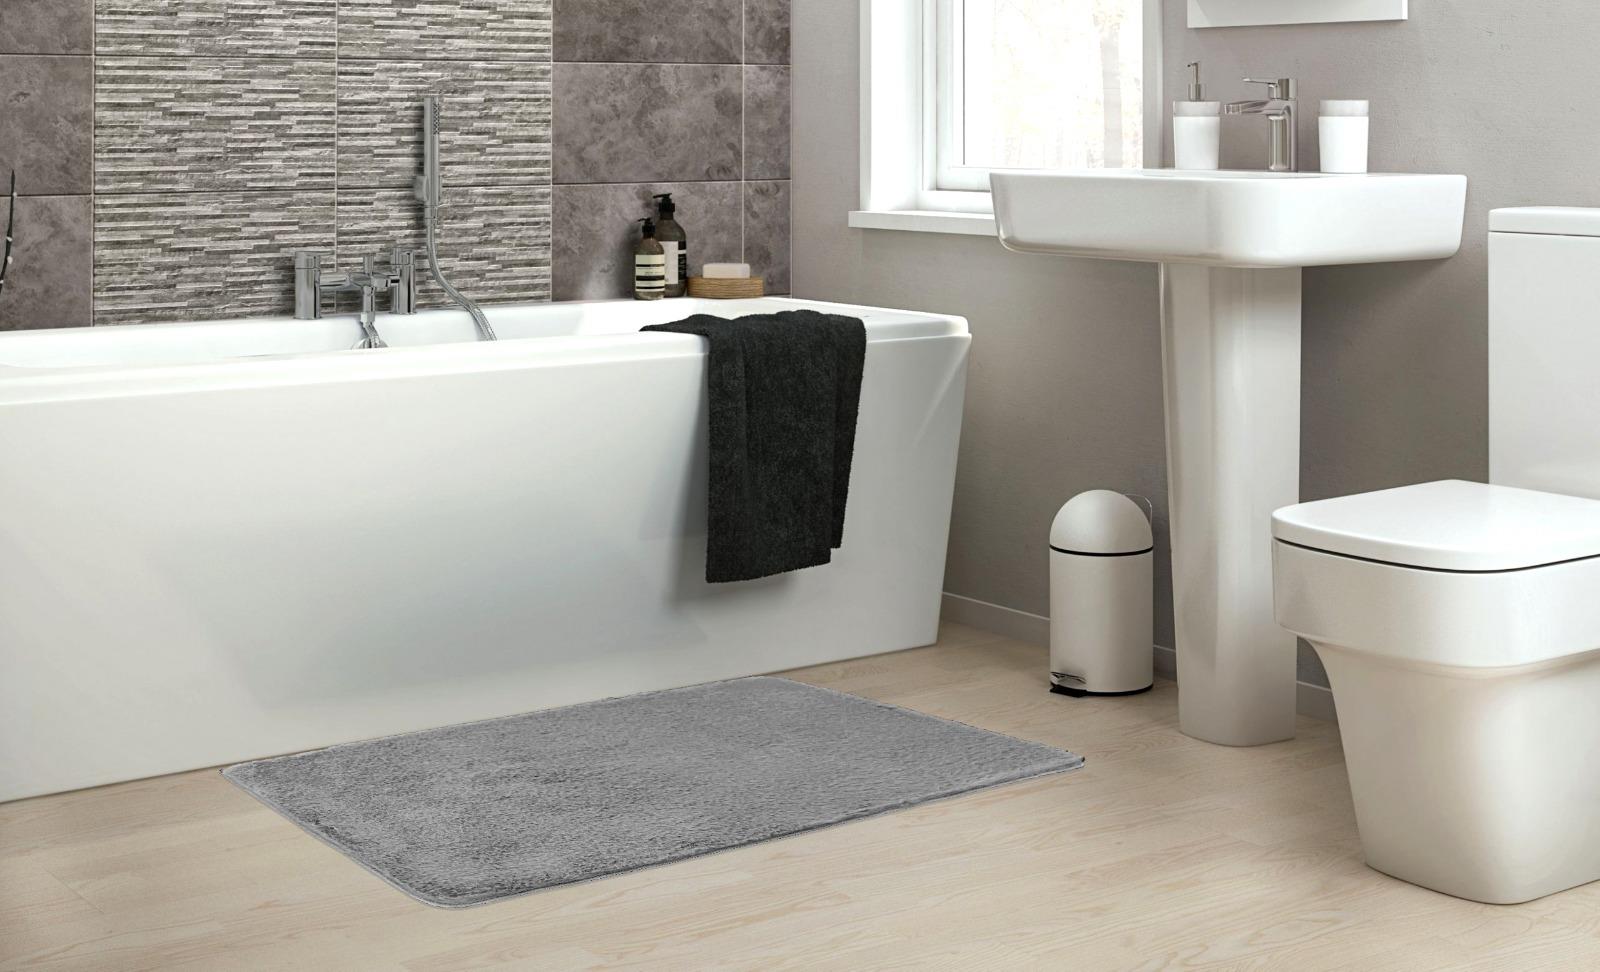 שטיח אמבטיה אפור בהיר דגם Soft סופט - נעים במיוחד!